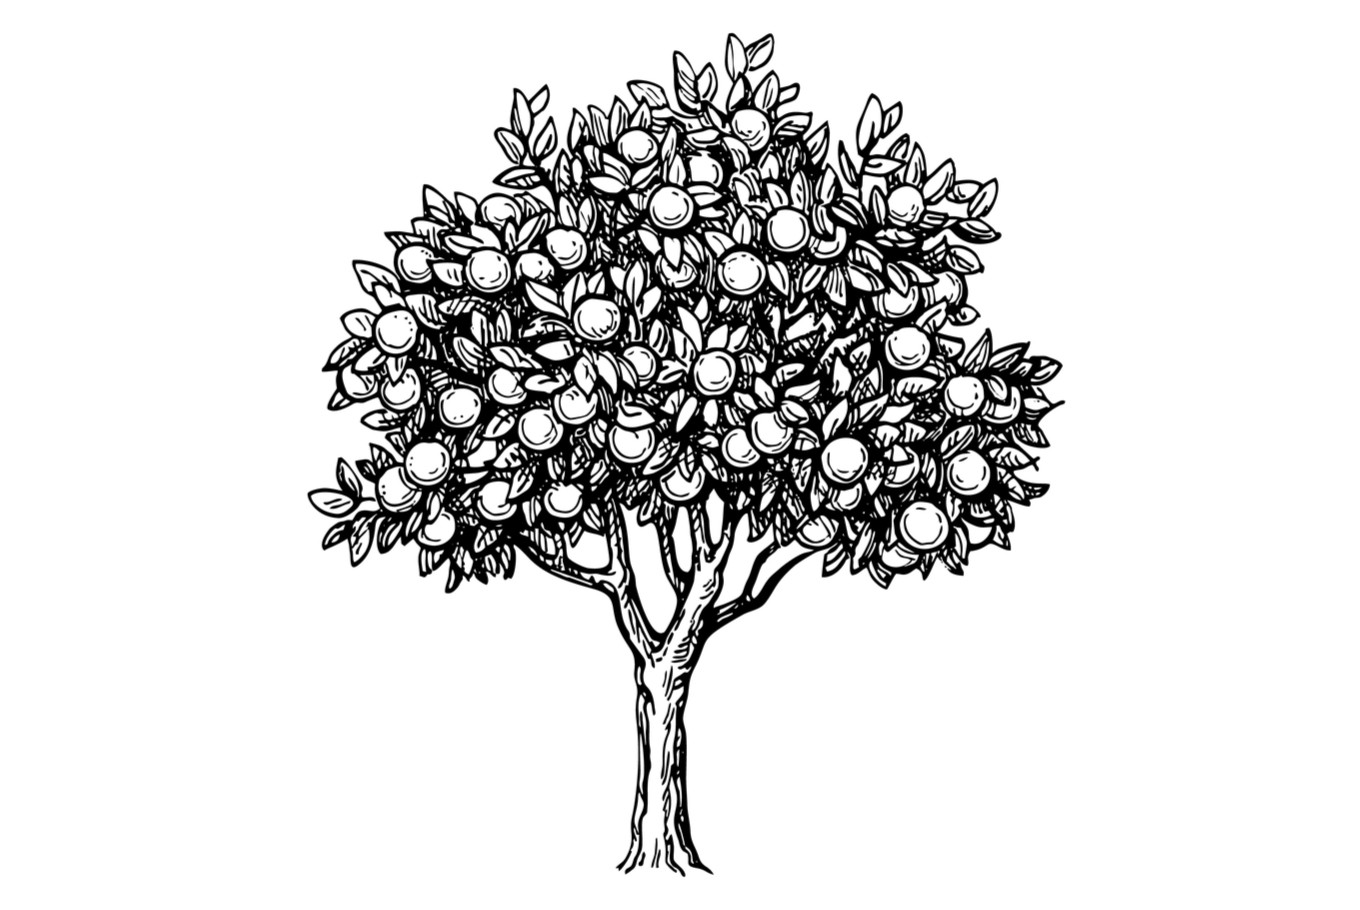 Lemon Tree Illustration